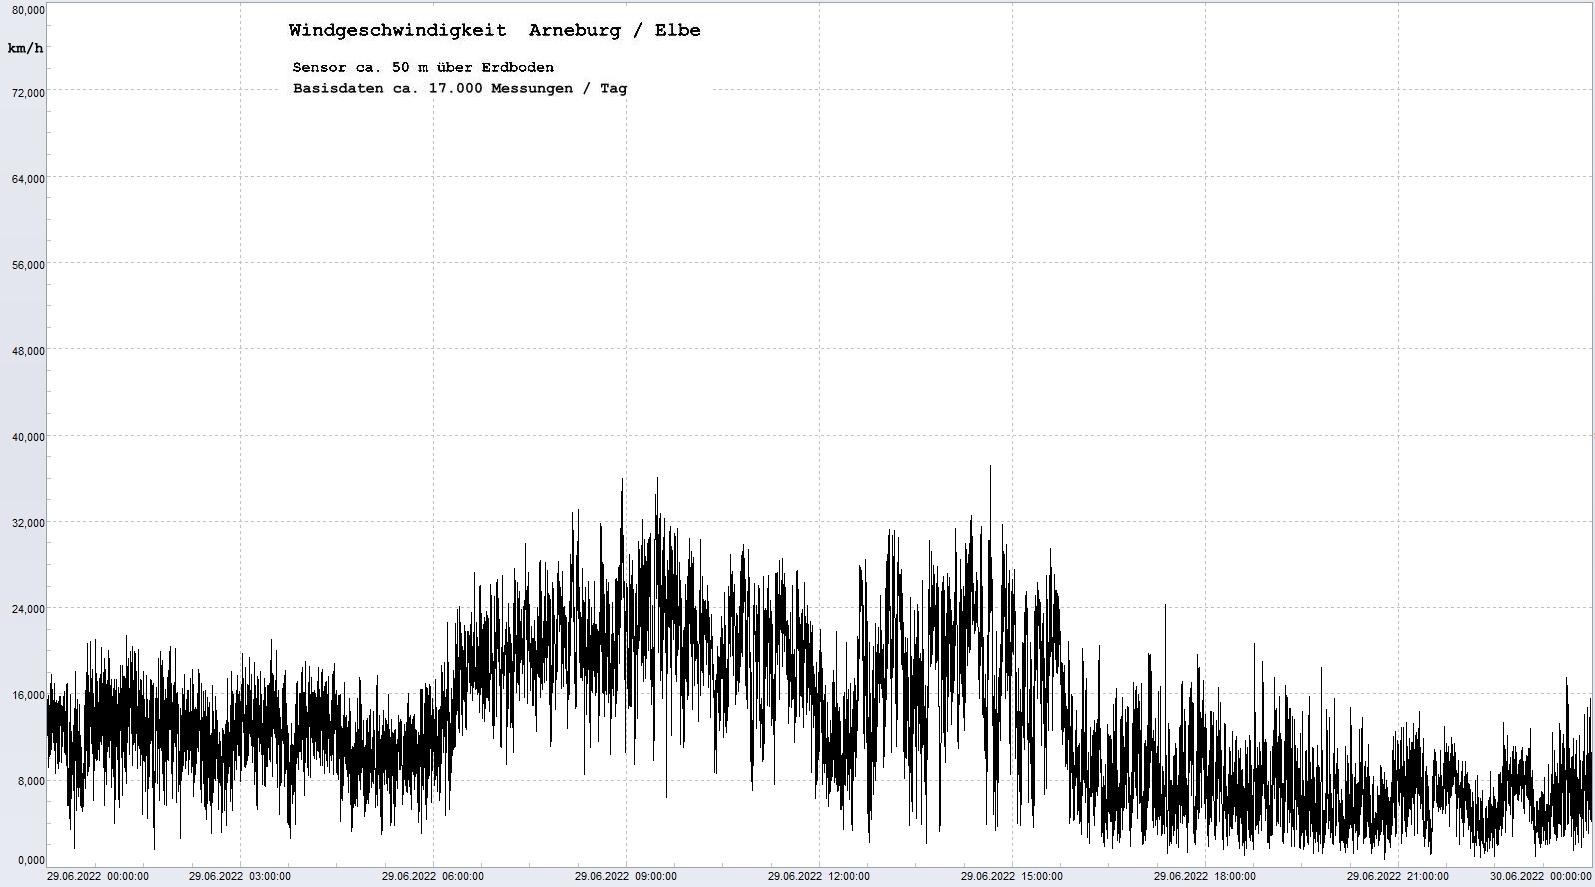 Arneburg Tages-Diagramm Winddaten, 29.06.2022
  Diagramm, Sensor auf Gebude, ca. 50 m ber Erdboden, Basis: 5s-Aufzeichnung